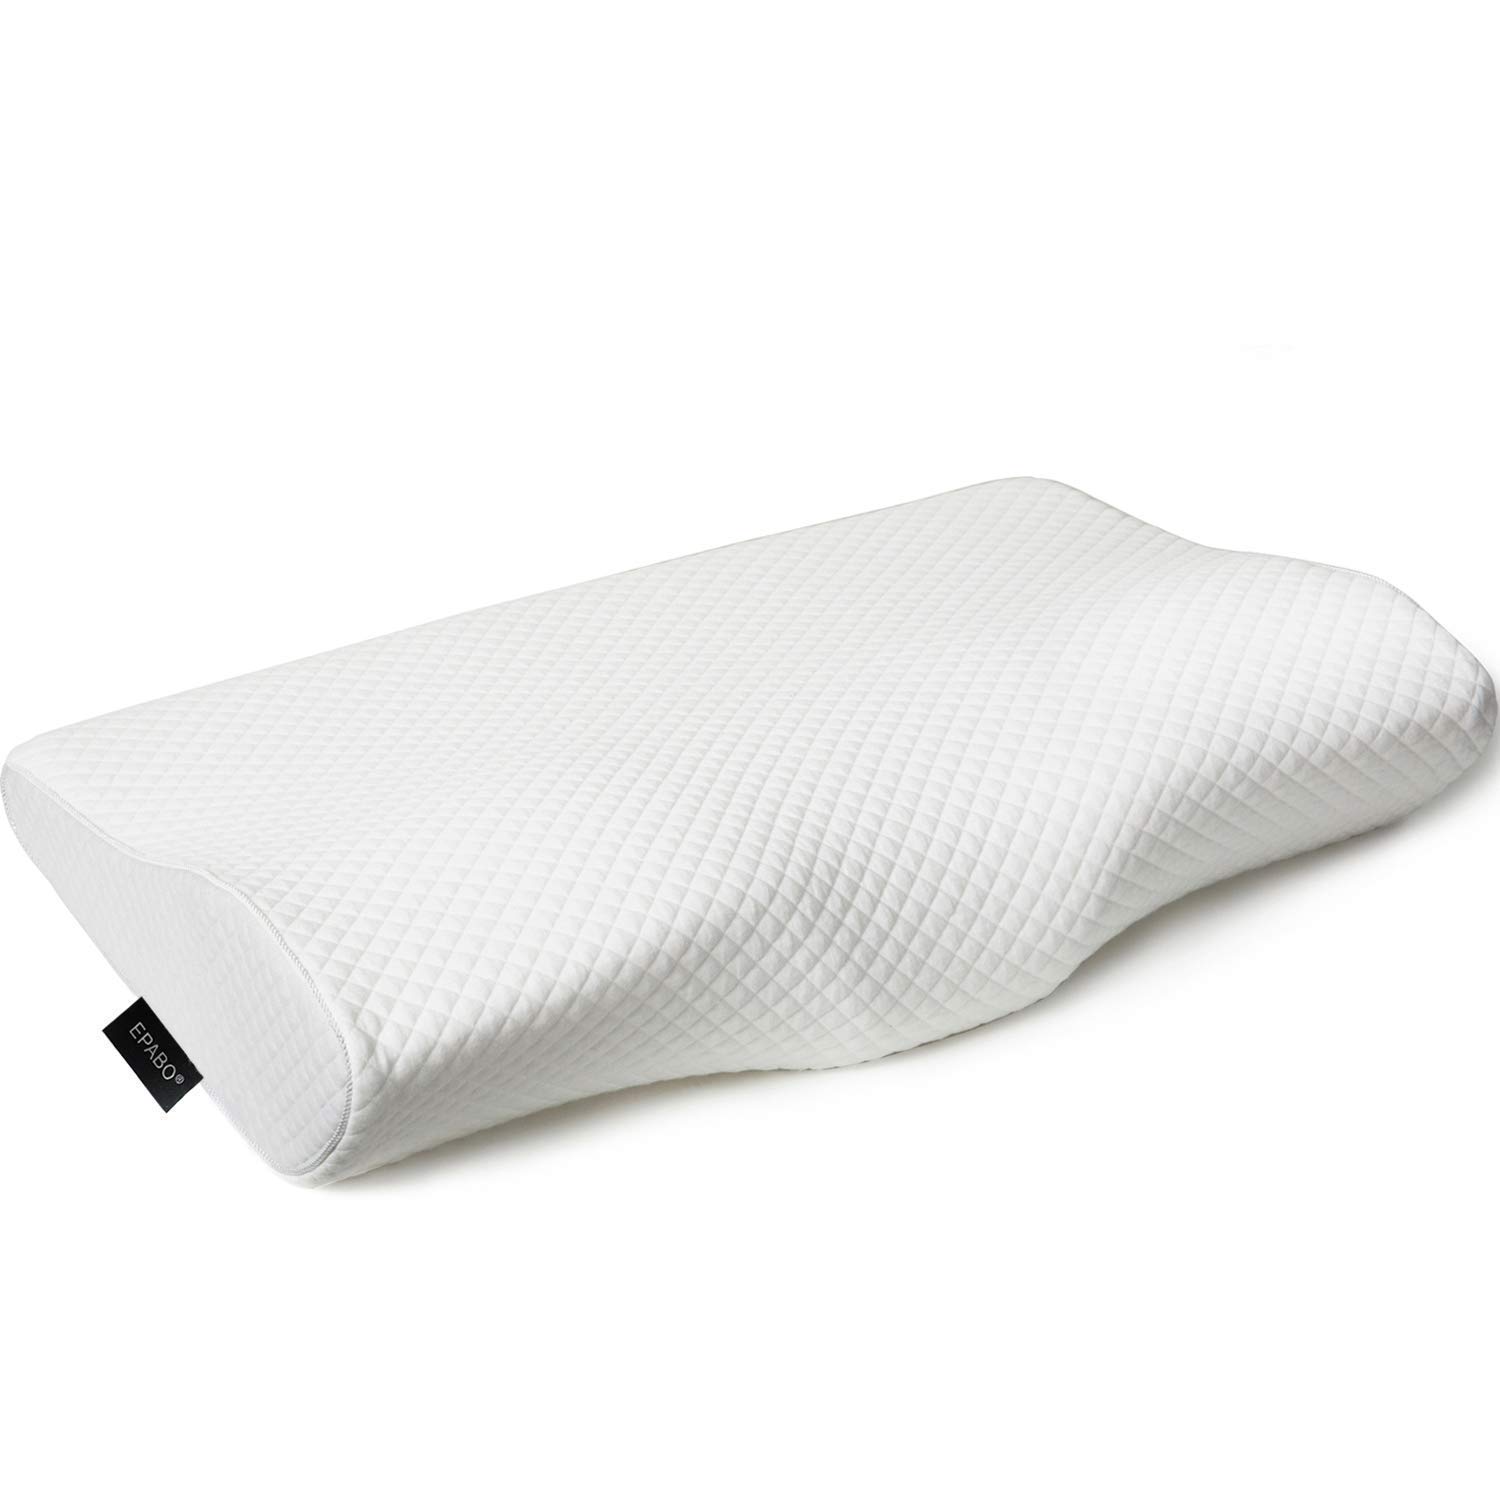 Epabo Contour Pillow